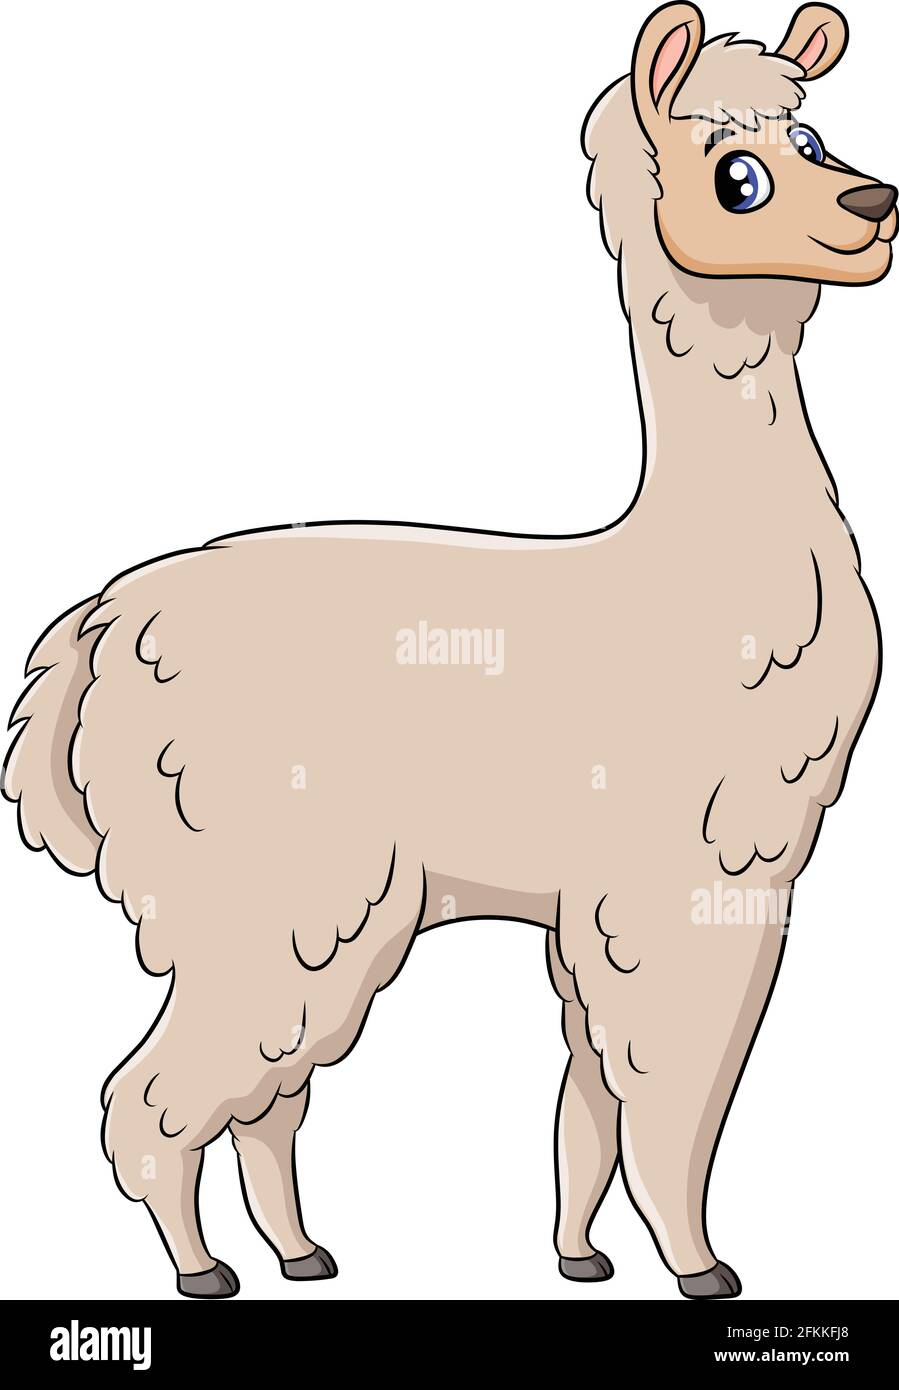 Alpaca cartoon hi-res stock photography and images - Alamy